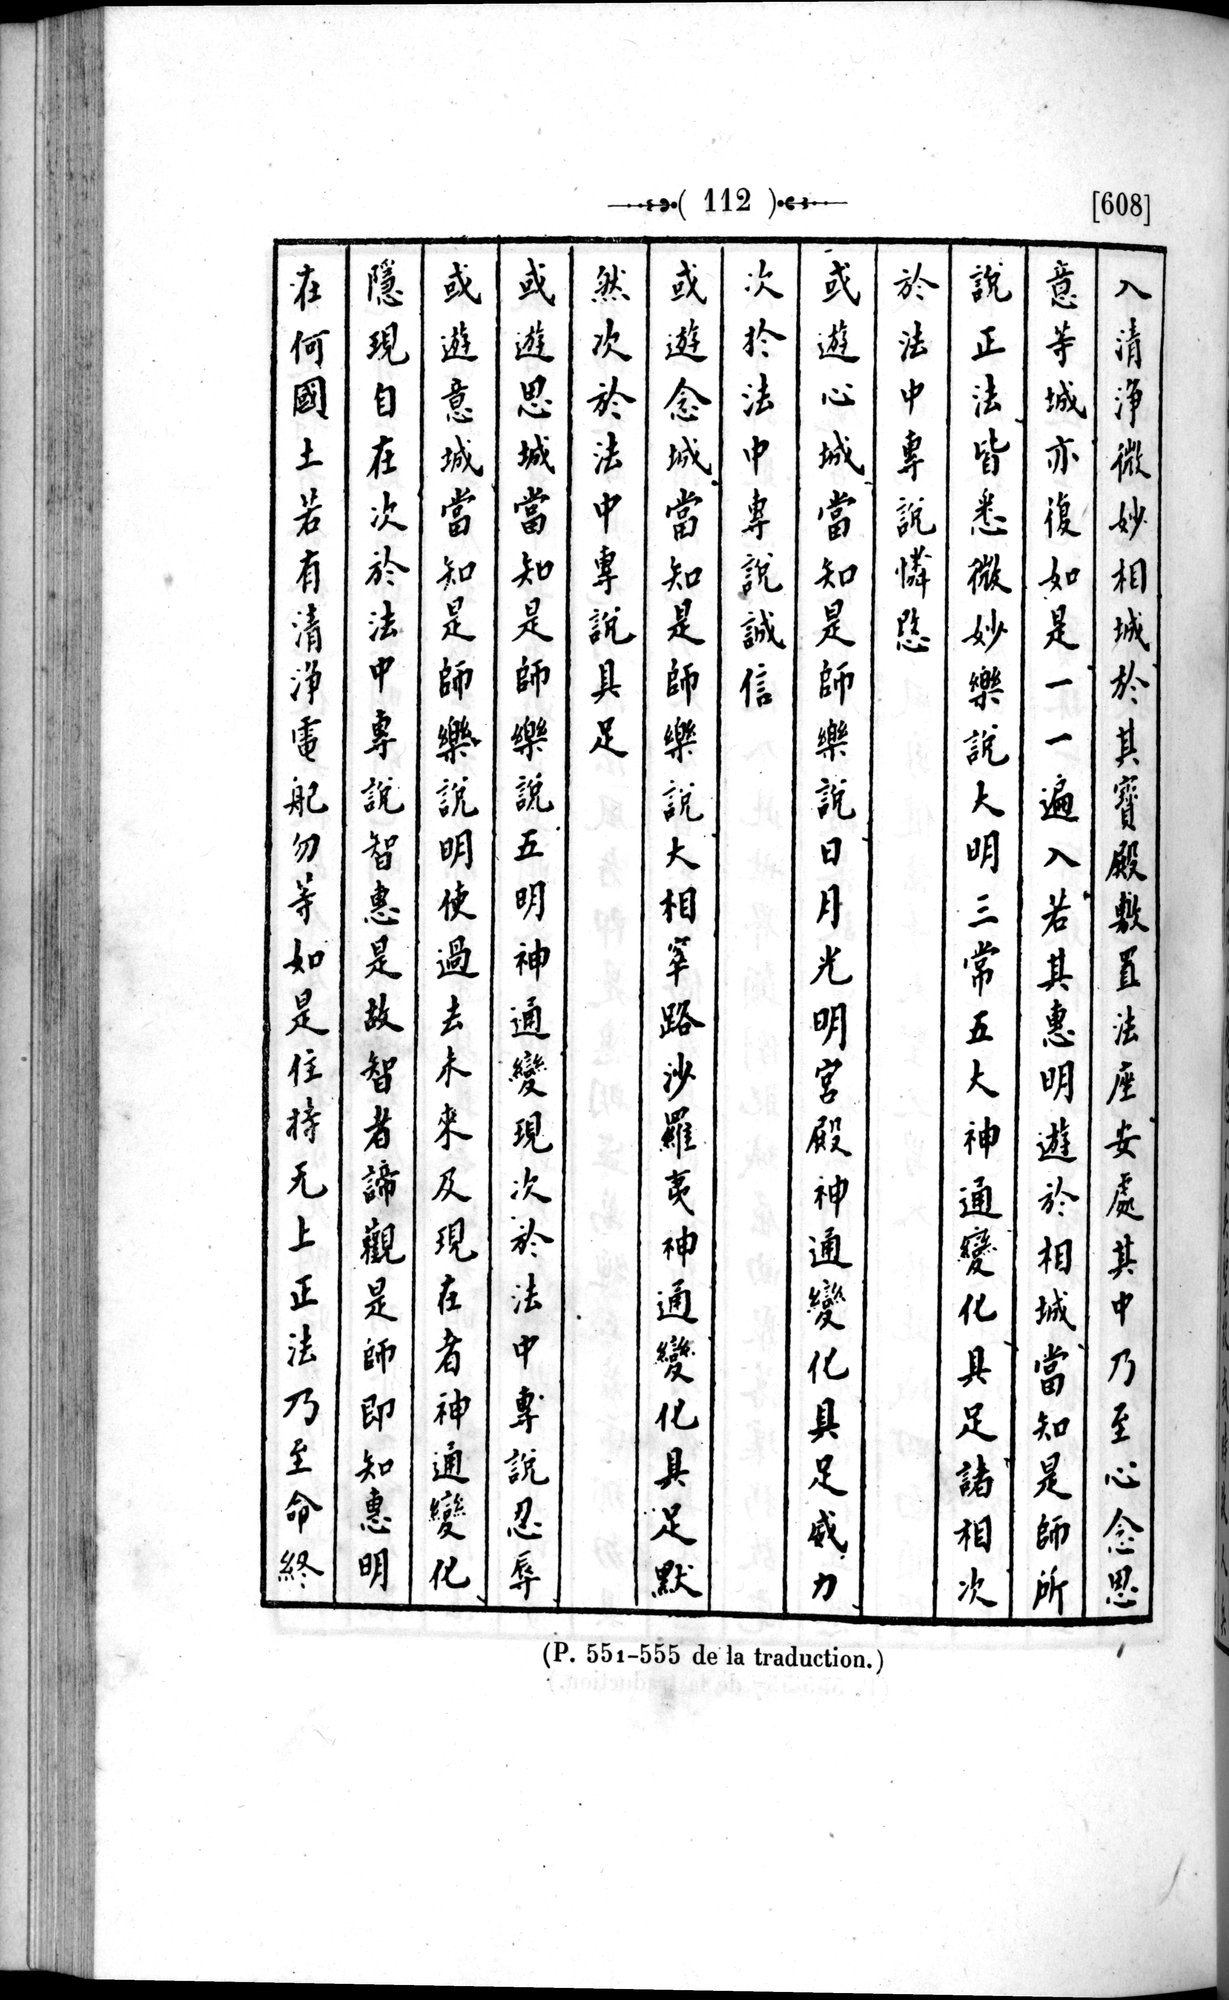 Un traité manichéen retrouvé en Chine : vol.1 / 122 ページ（白黒高解像度画像）